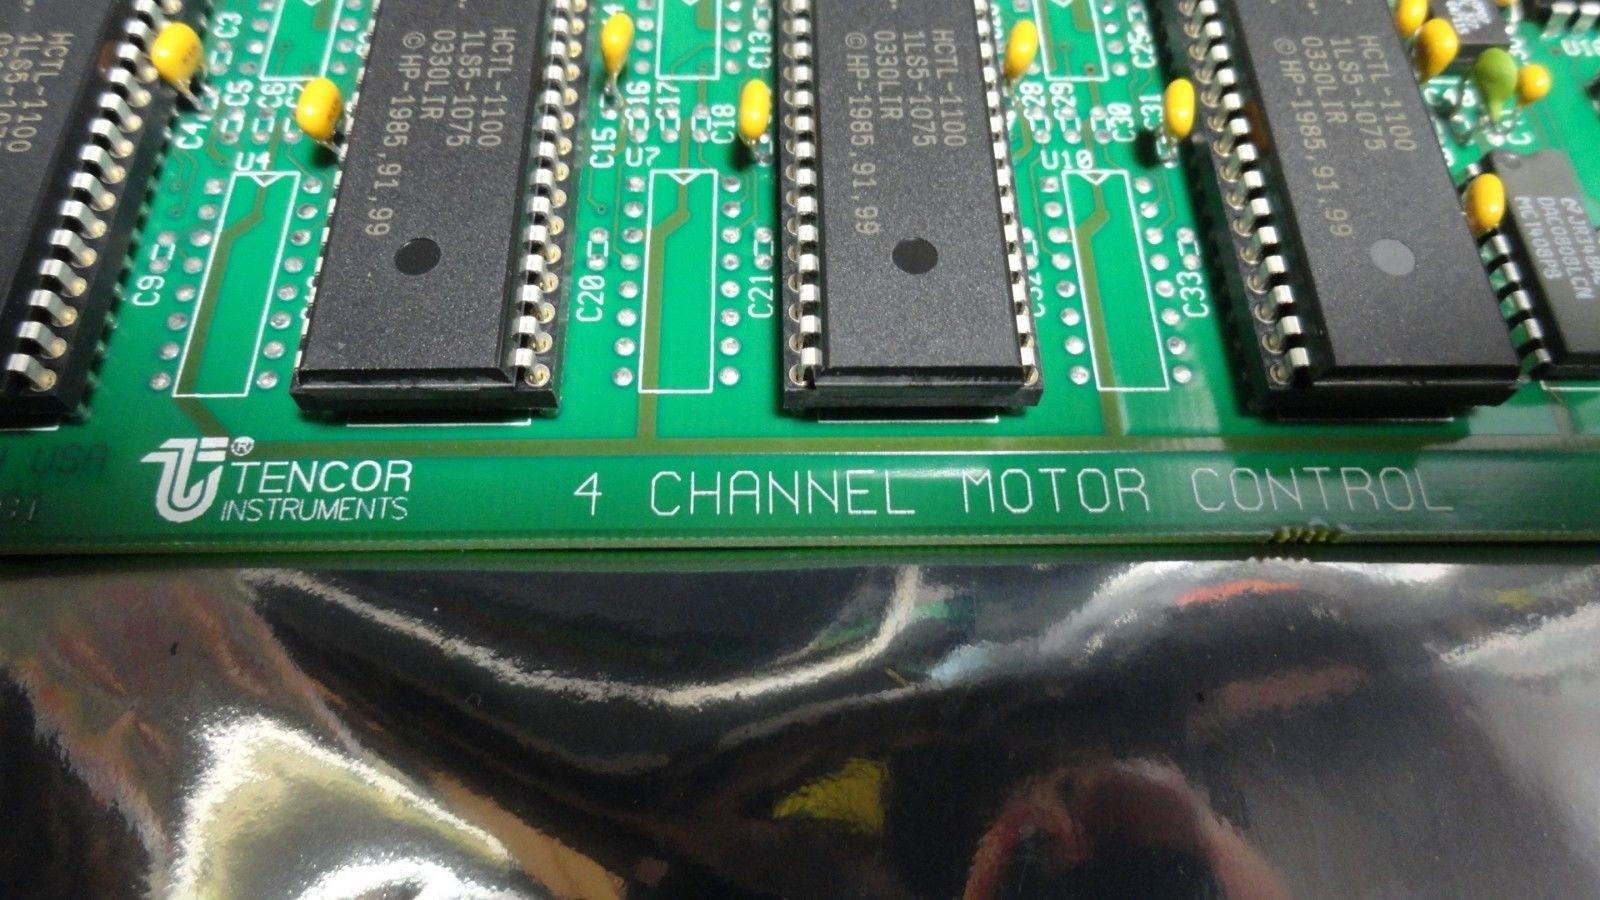 KLA-Tencor 261408 4 Channel Motor Control PCB Rev. AE AIT UV Used Working